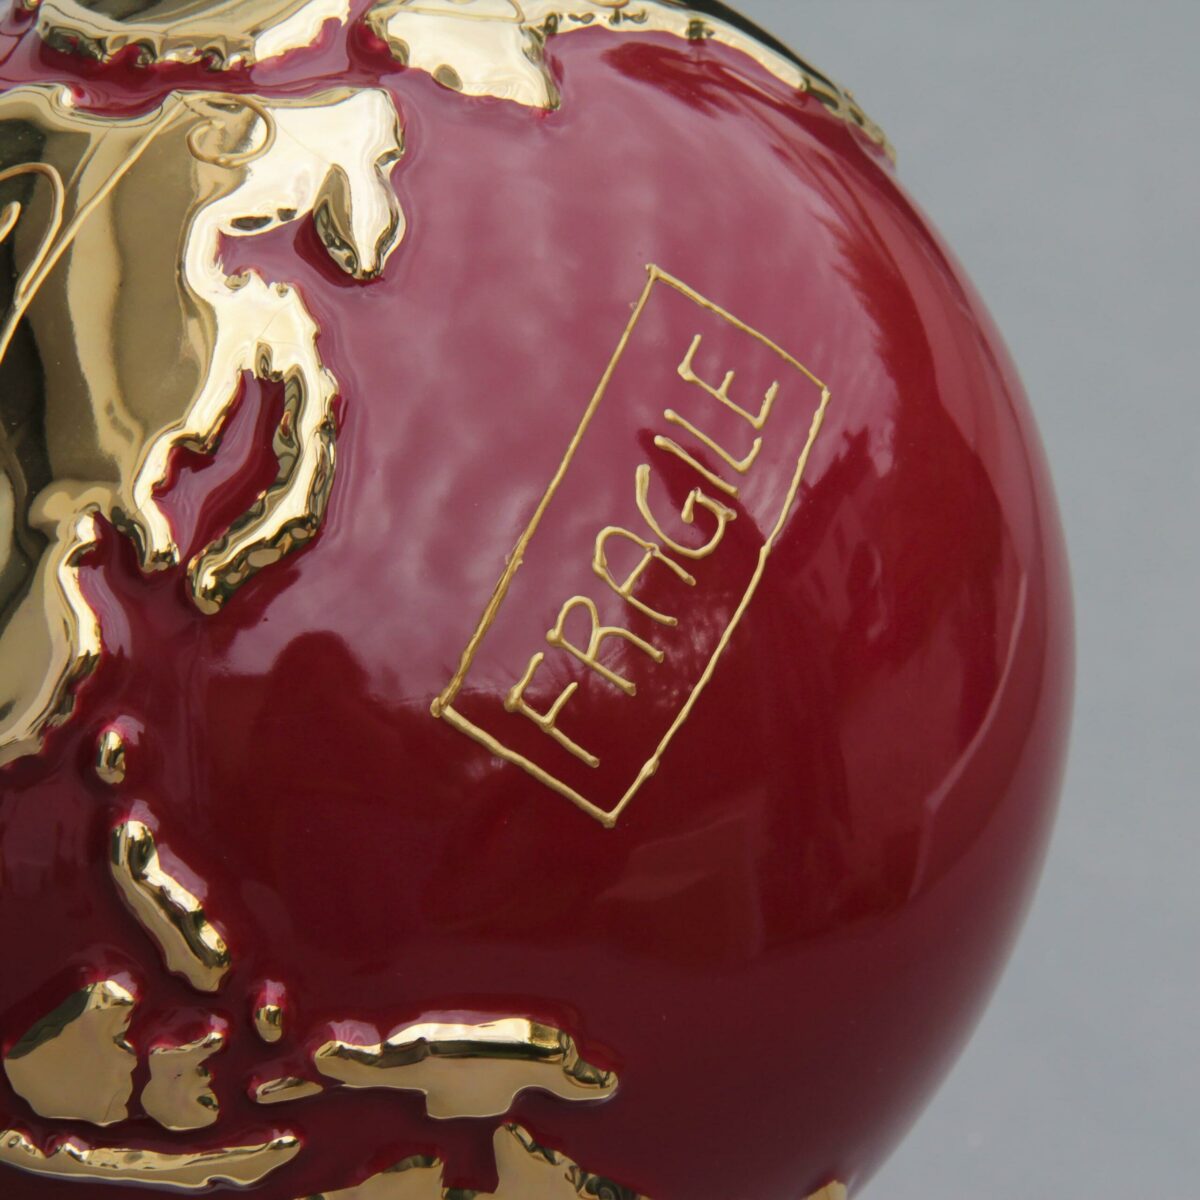 particolare globo in ceramica rosso rappresentante la terra con la scritta "Fragile" dorata